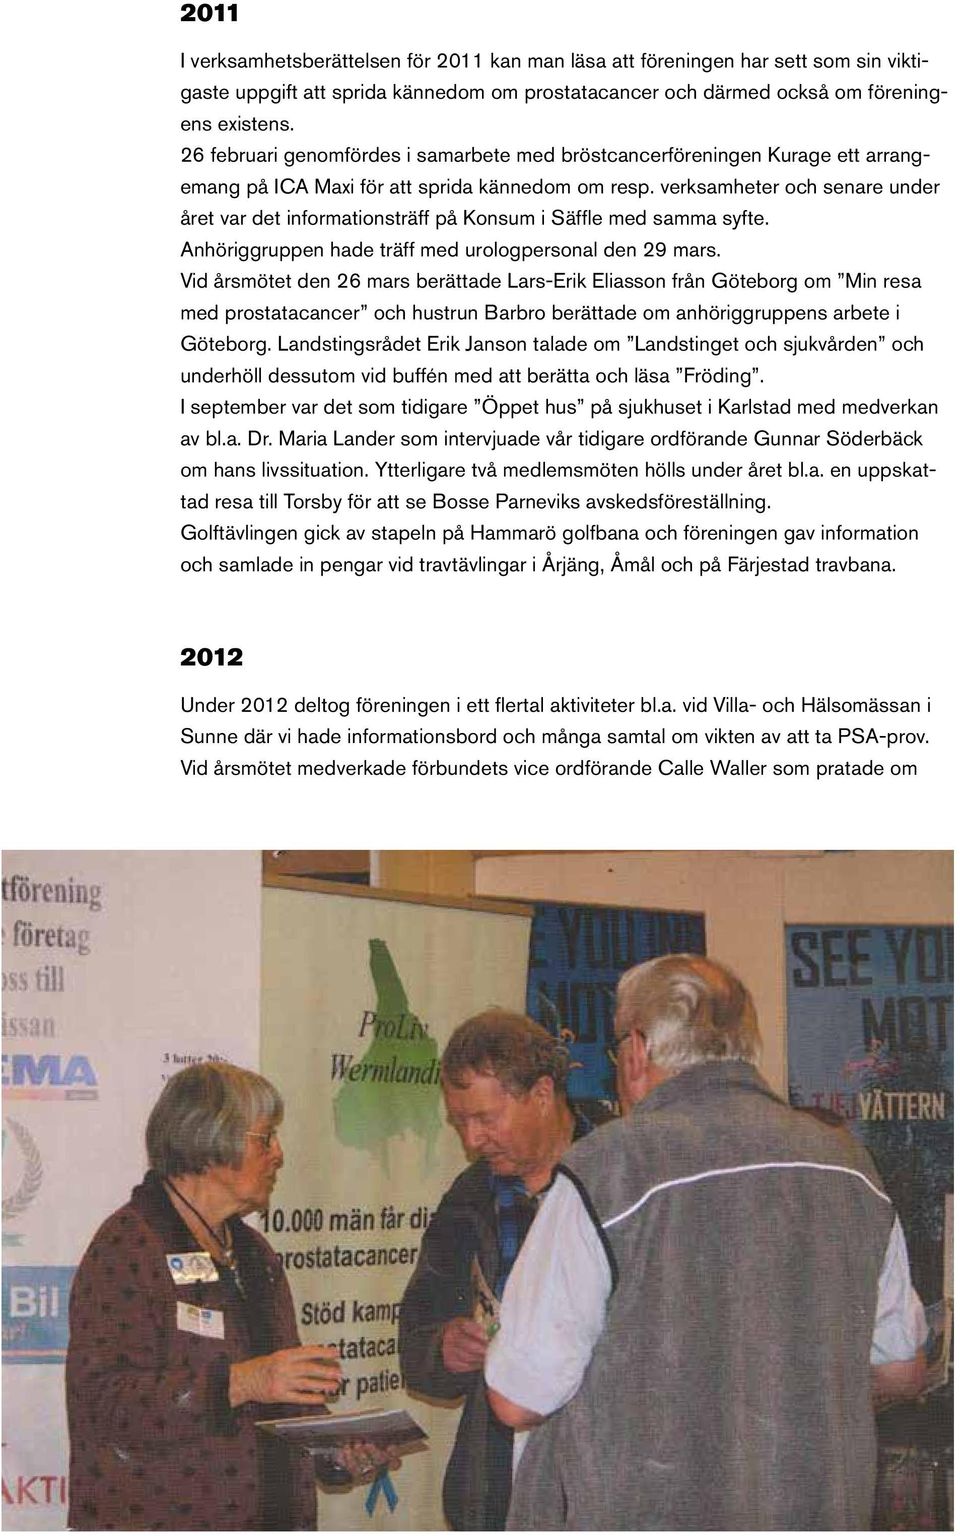 verksamheter och senare under året var det informationsträff på Konsum i Säffle med samma syfte. Anhöriggruppen hade träff med urologpersonal den 29 mars.